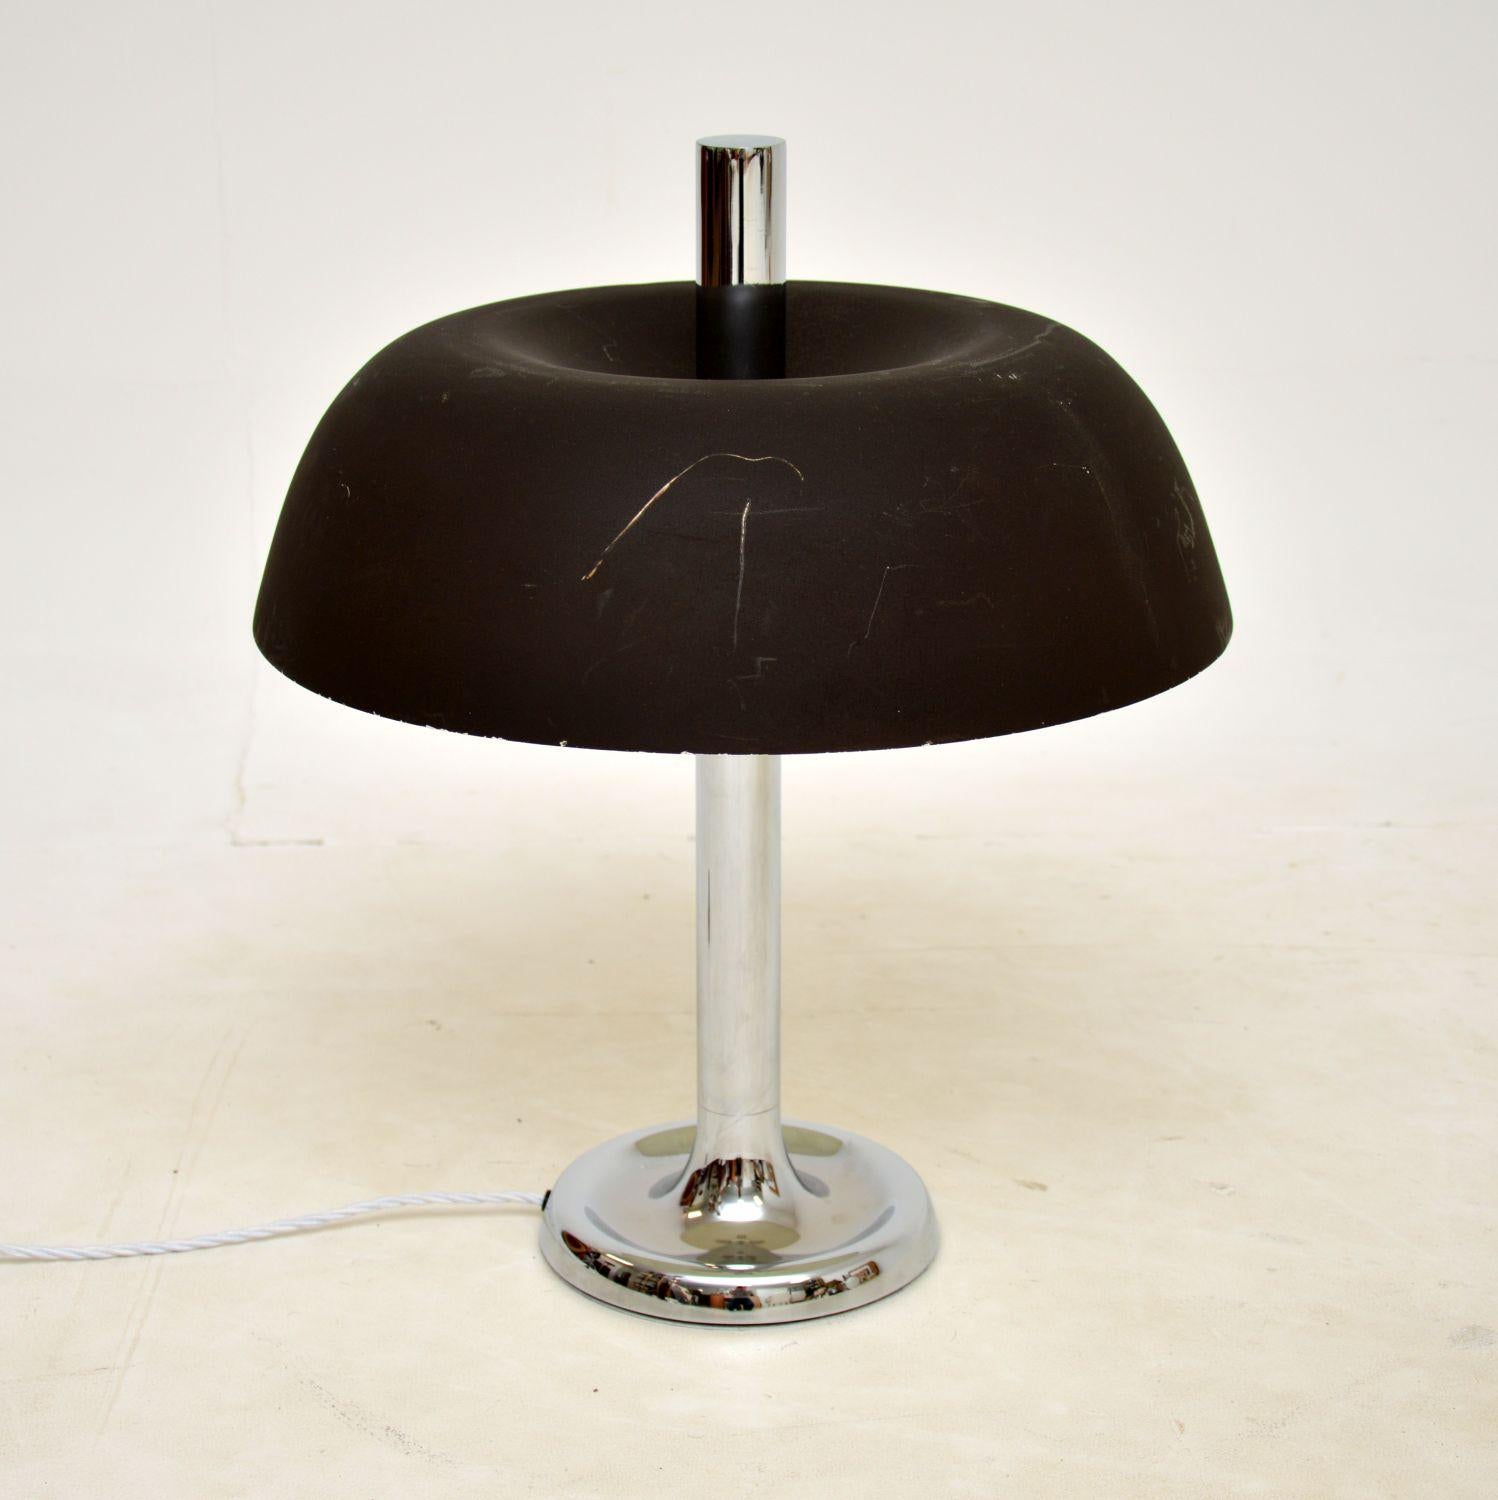 Une lampe de table/de bureau vintage chromée très élégante et bien fabriquée. Récemment importé d'Italie, il date des années 1970.

La qualité est excellente, le design est magnifique et la taille est impressionnante.

L'abat-jour en métal foncé